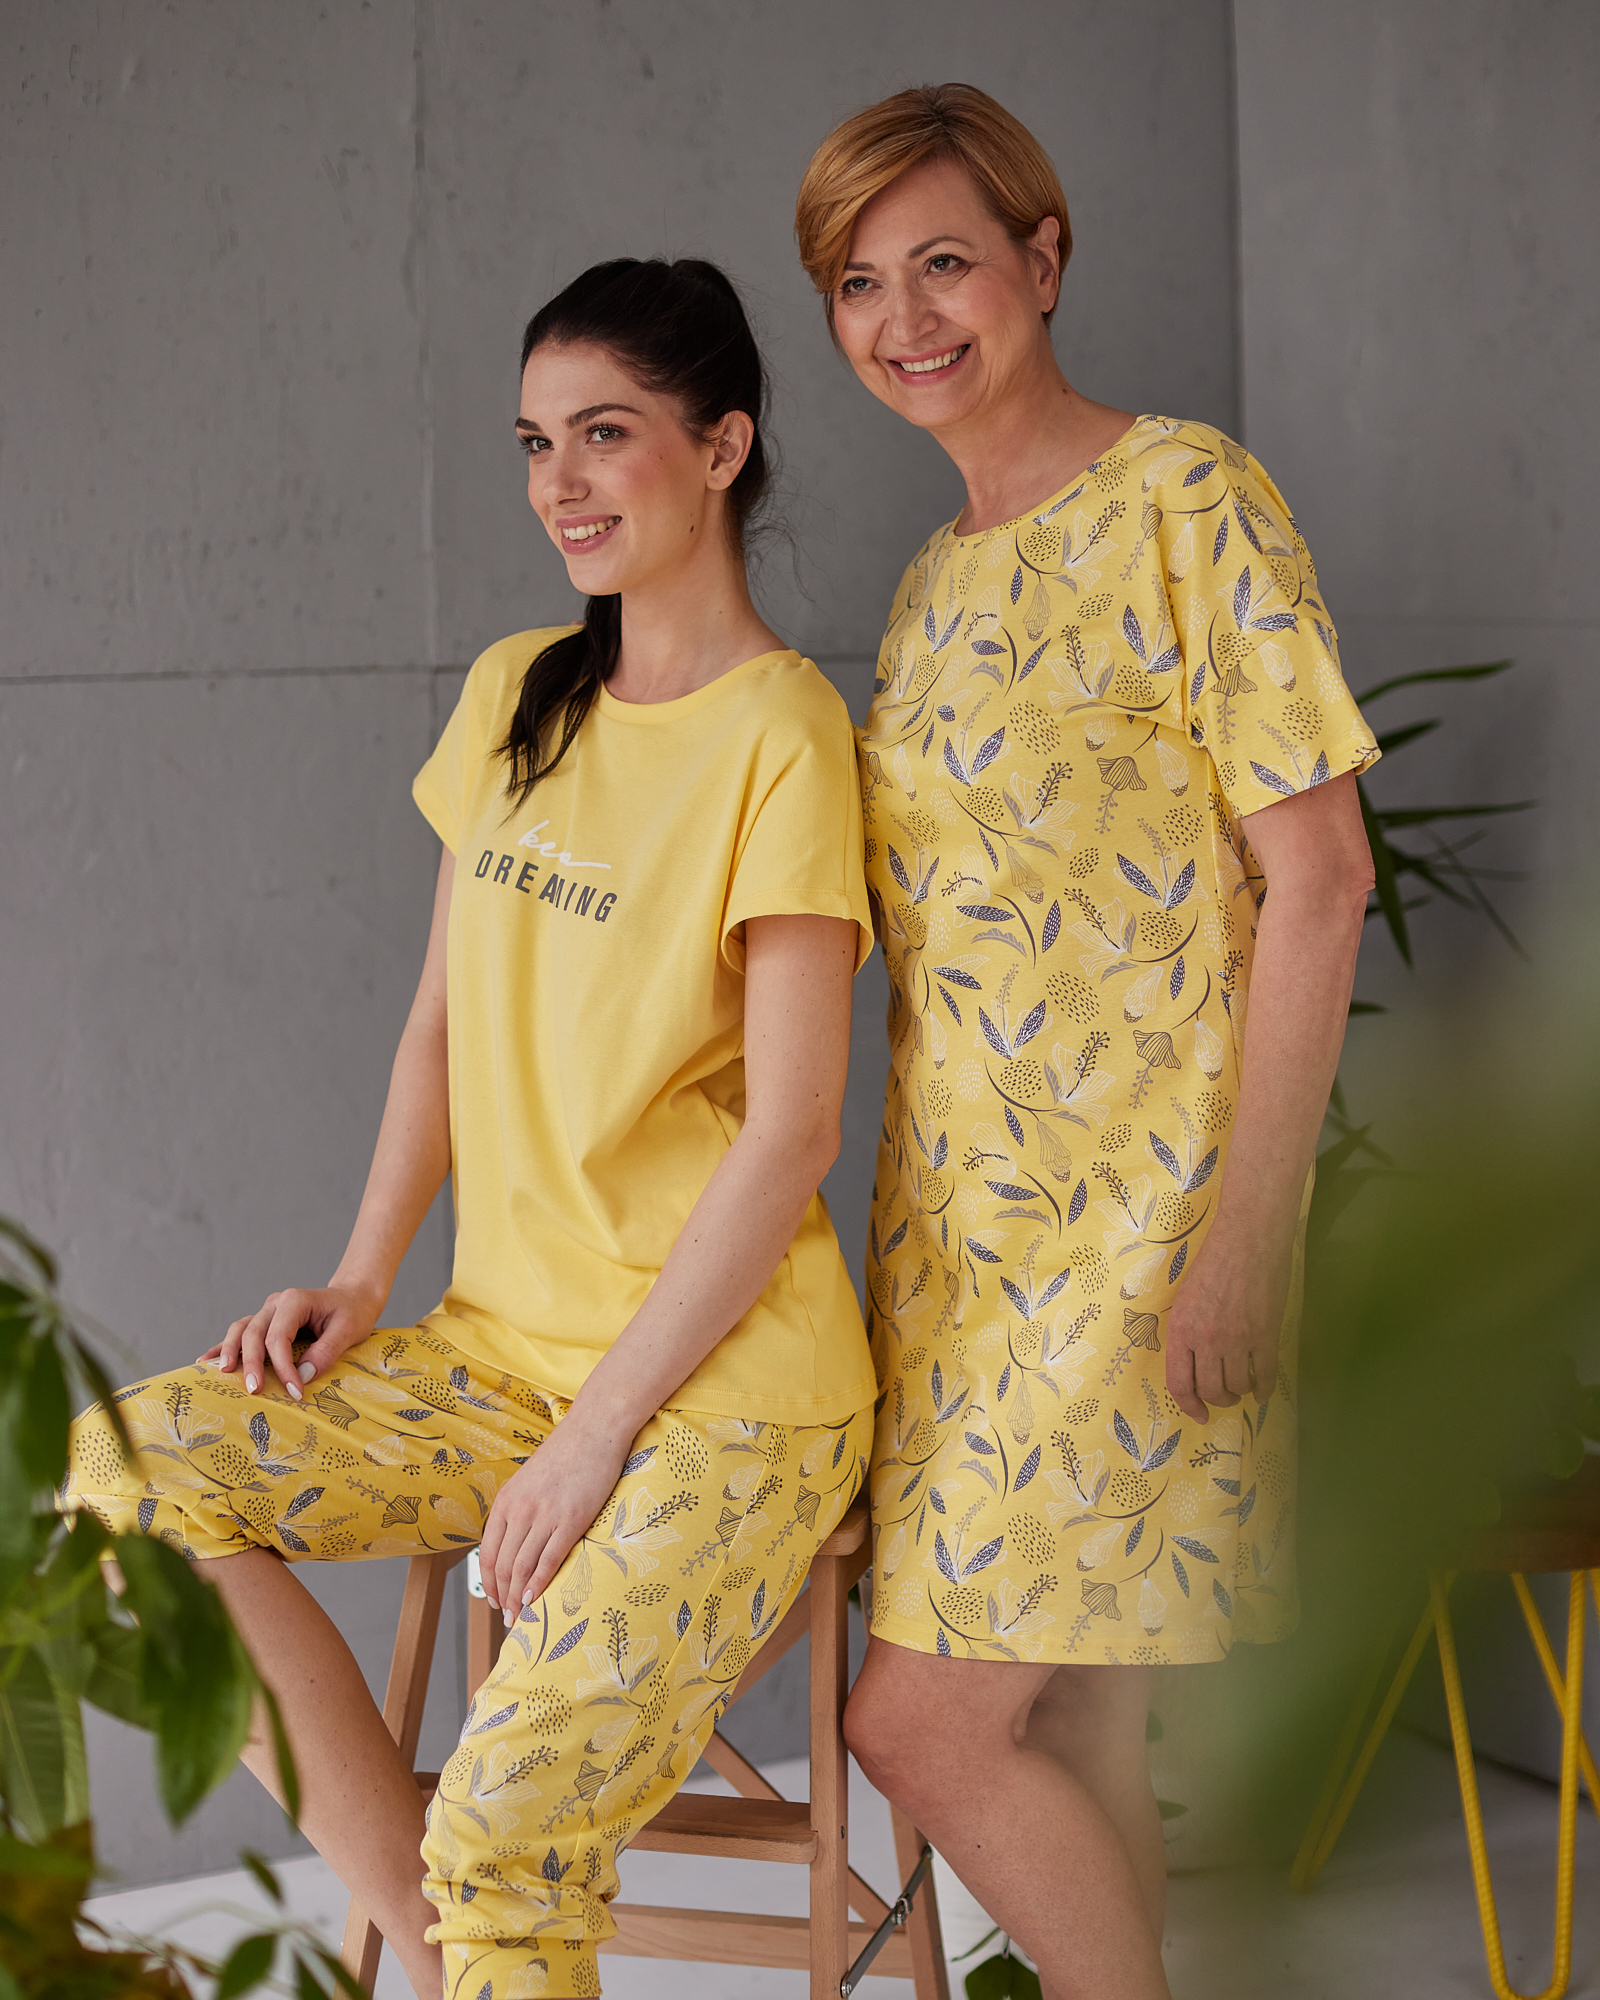 Devojka sedi i žena pored nje stoji u žutim pidžamama sa šarom listova i cveca